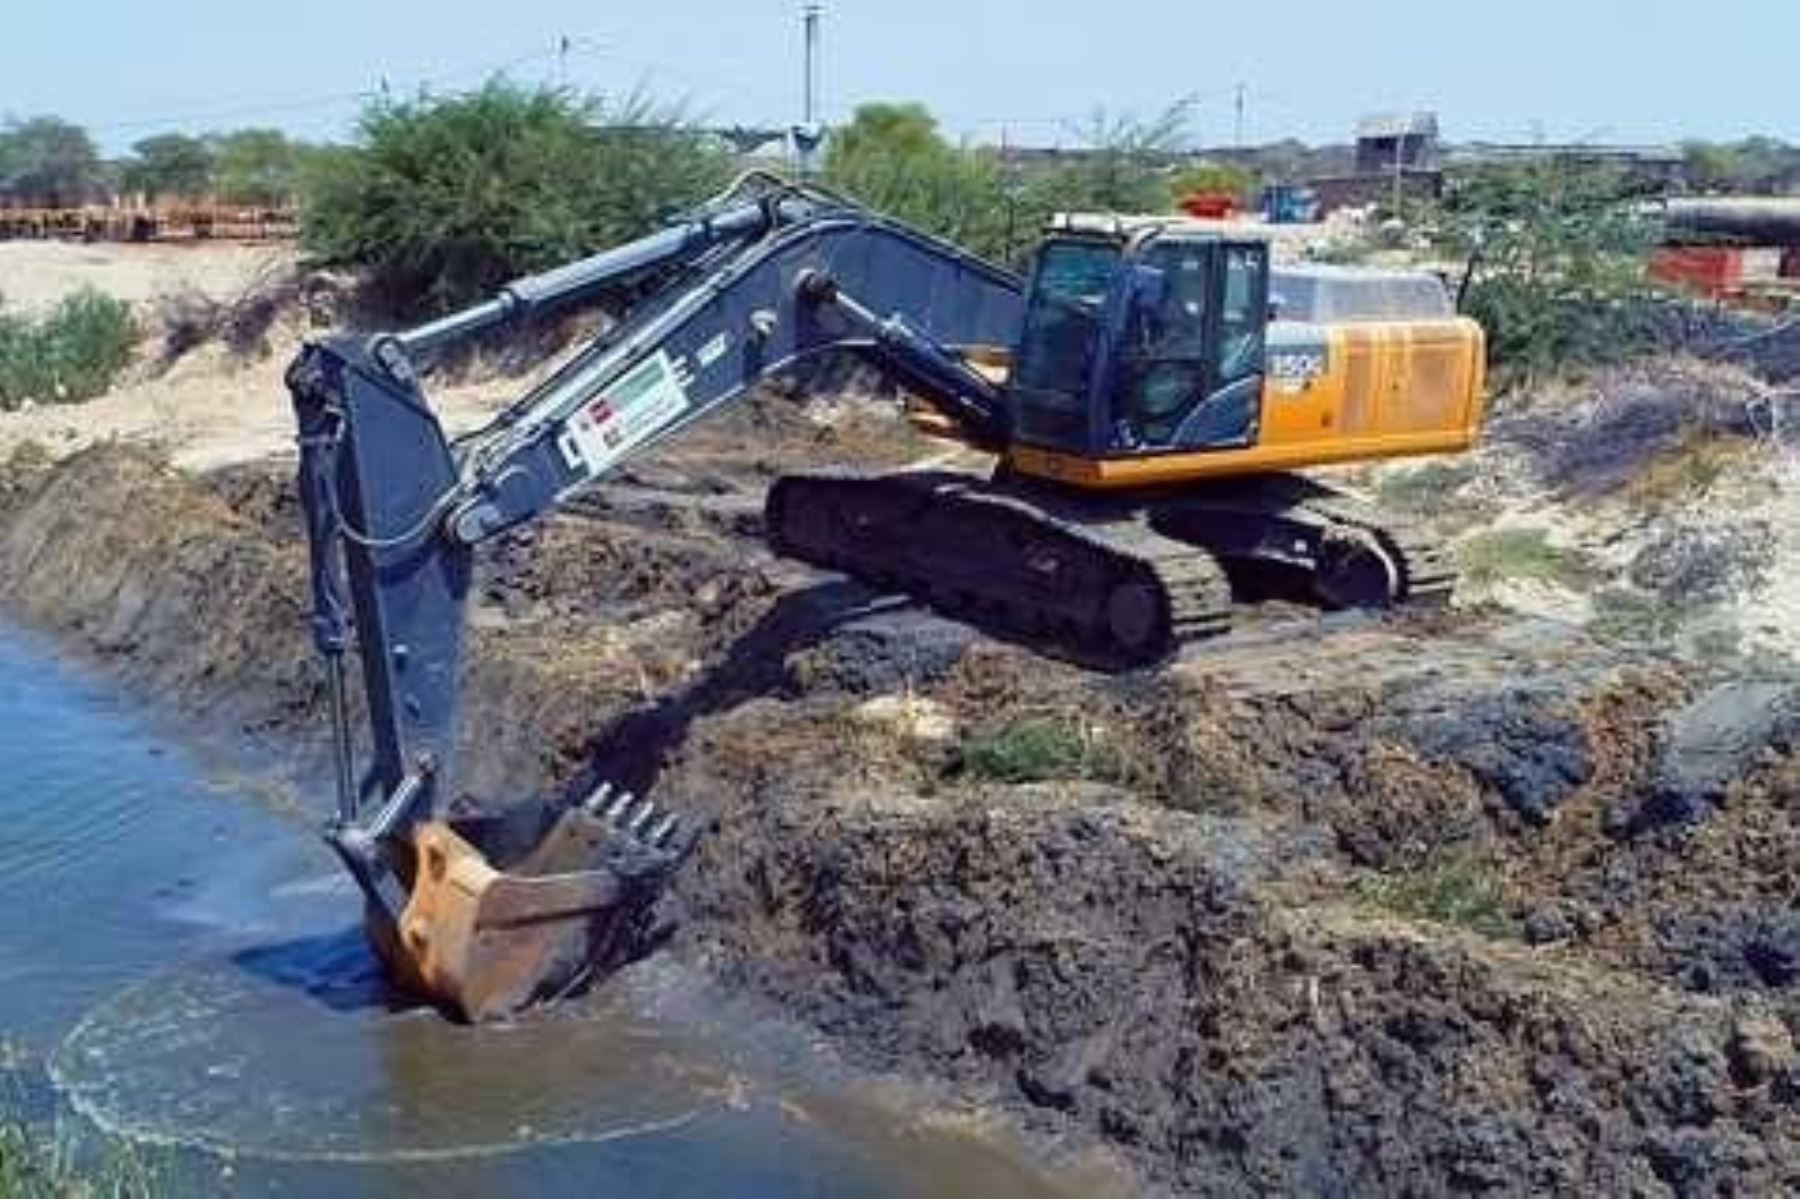 En Piura concluyeron los trabajos de limpieza de más de 15 kilómetros correspondientes a cinco drenes de la región, con el fin de reducir el riesgo de inundaciones en las ciudades ante eventuales lluvias de gran intensidad, informó la Autoridad para la Reconstrucción con Cambios.